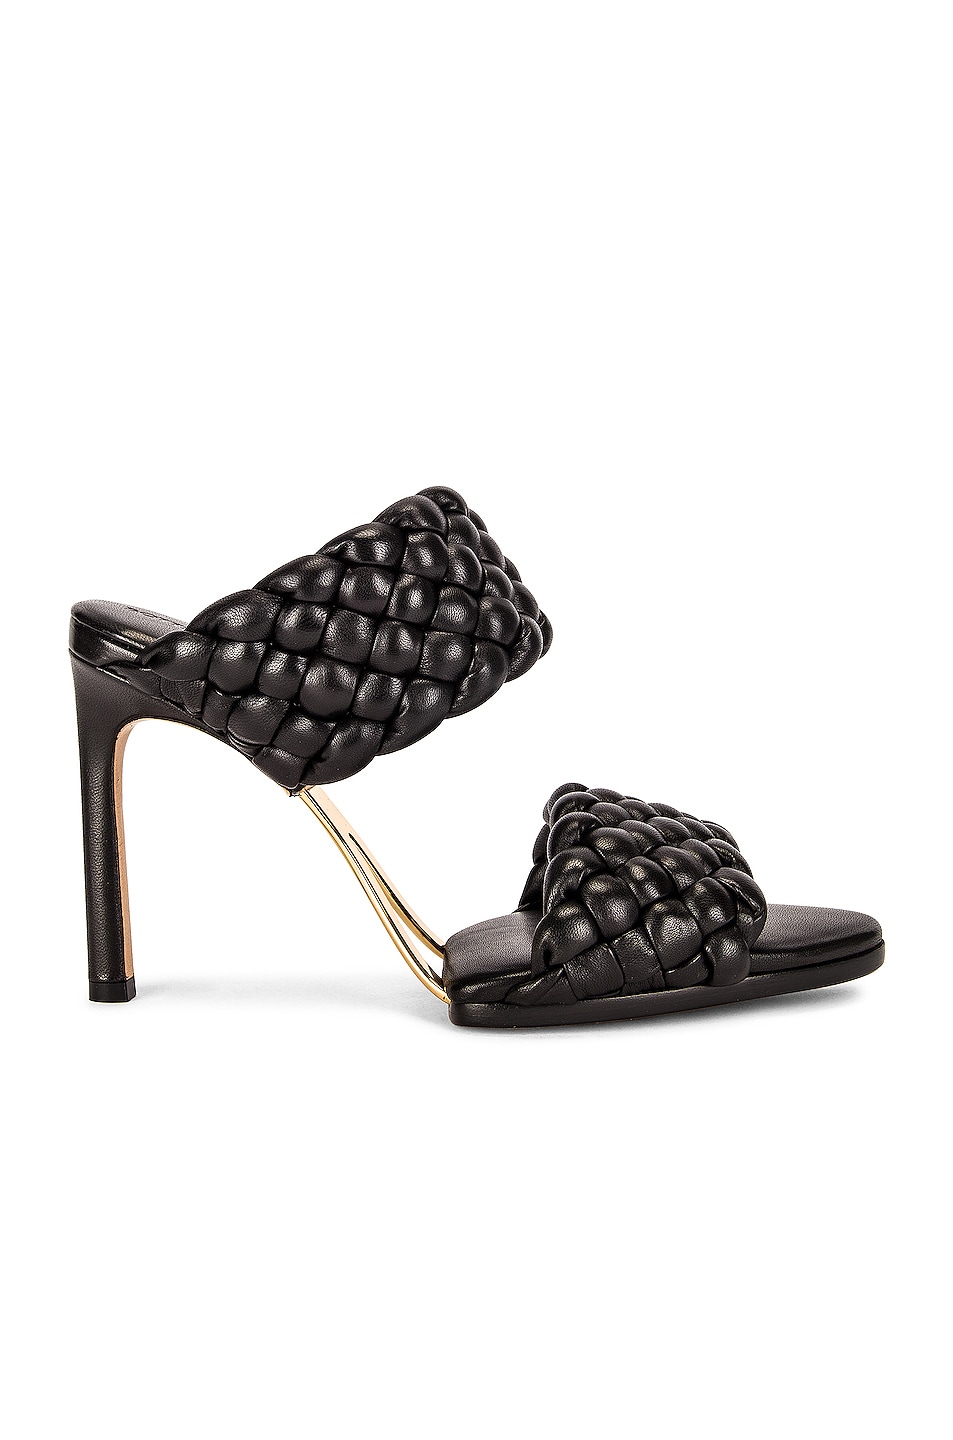 Bottega Veneta Lido Leather Woven Sandals in Black | FWRD